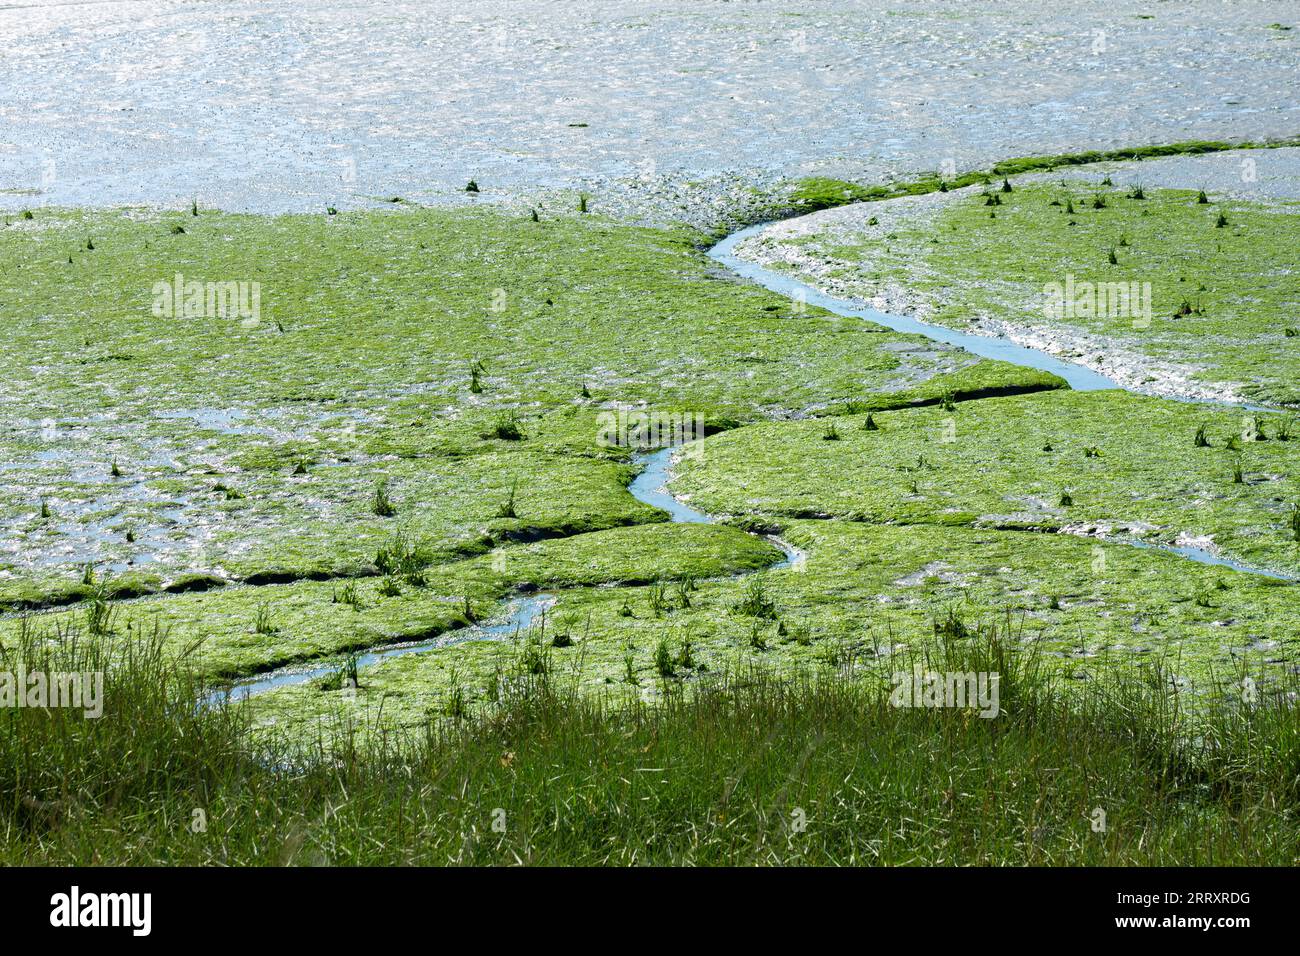 Paysages côtiers de Grande-Bretagne - végétation luxuriante poussant dans les marais salants intertidaux. Banque D'Images